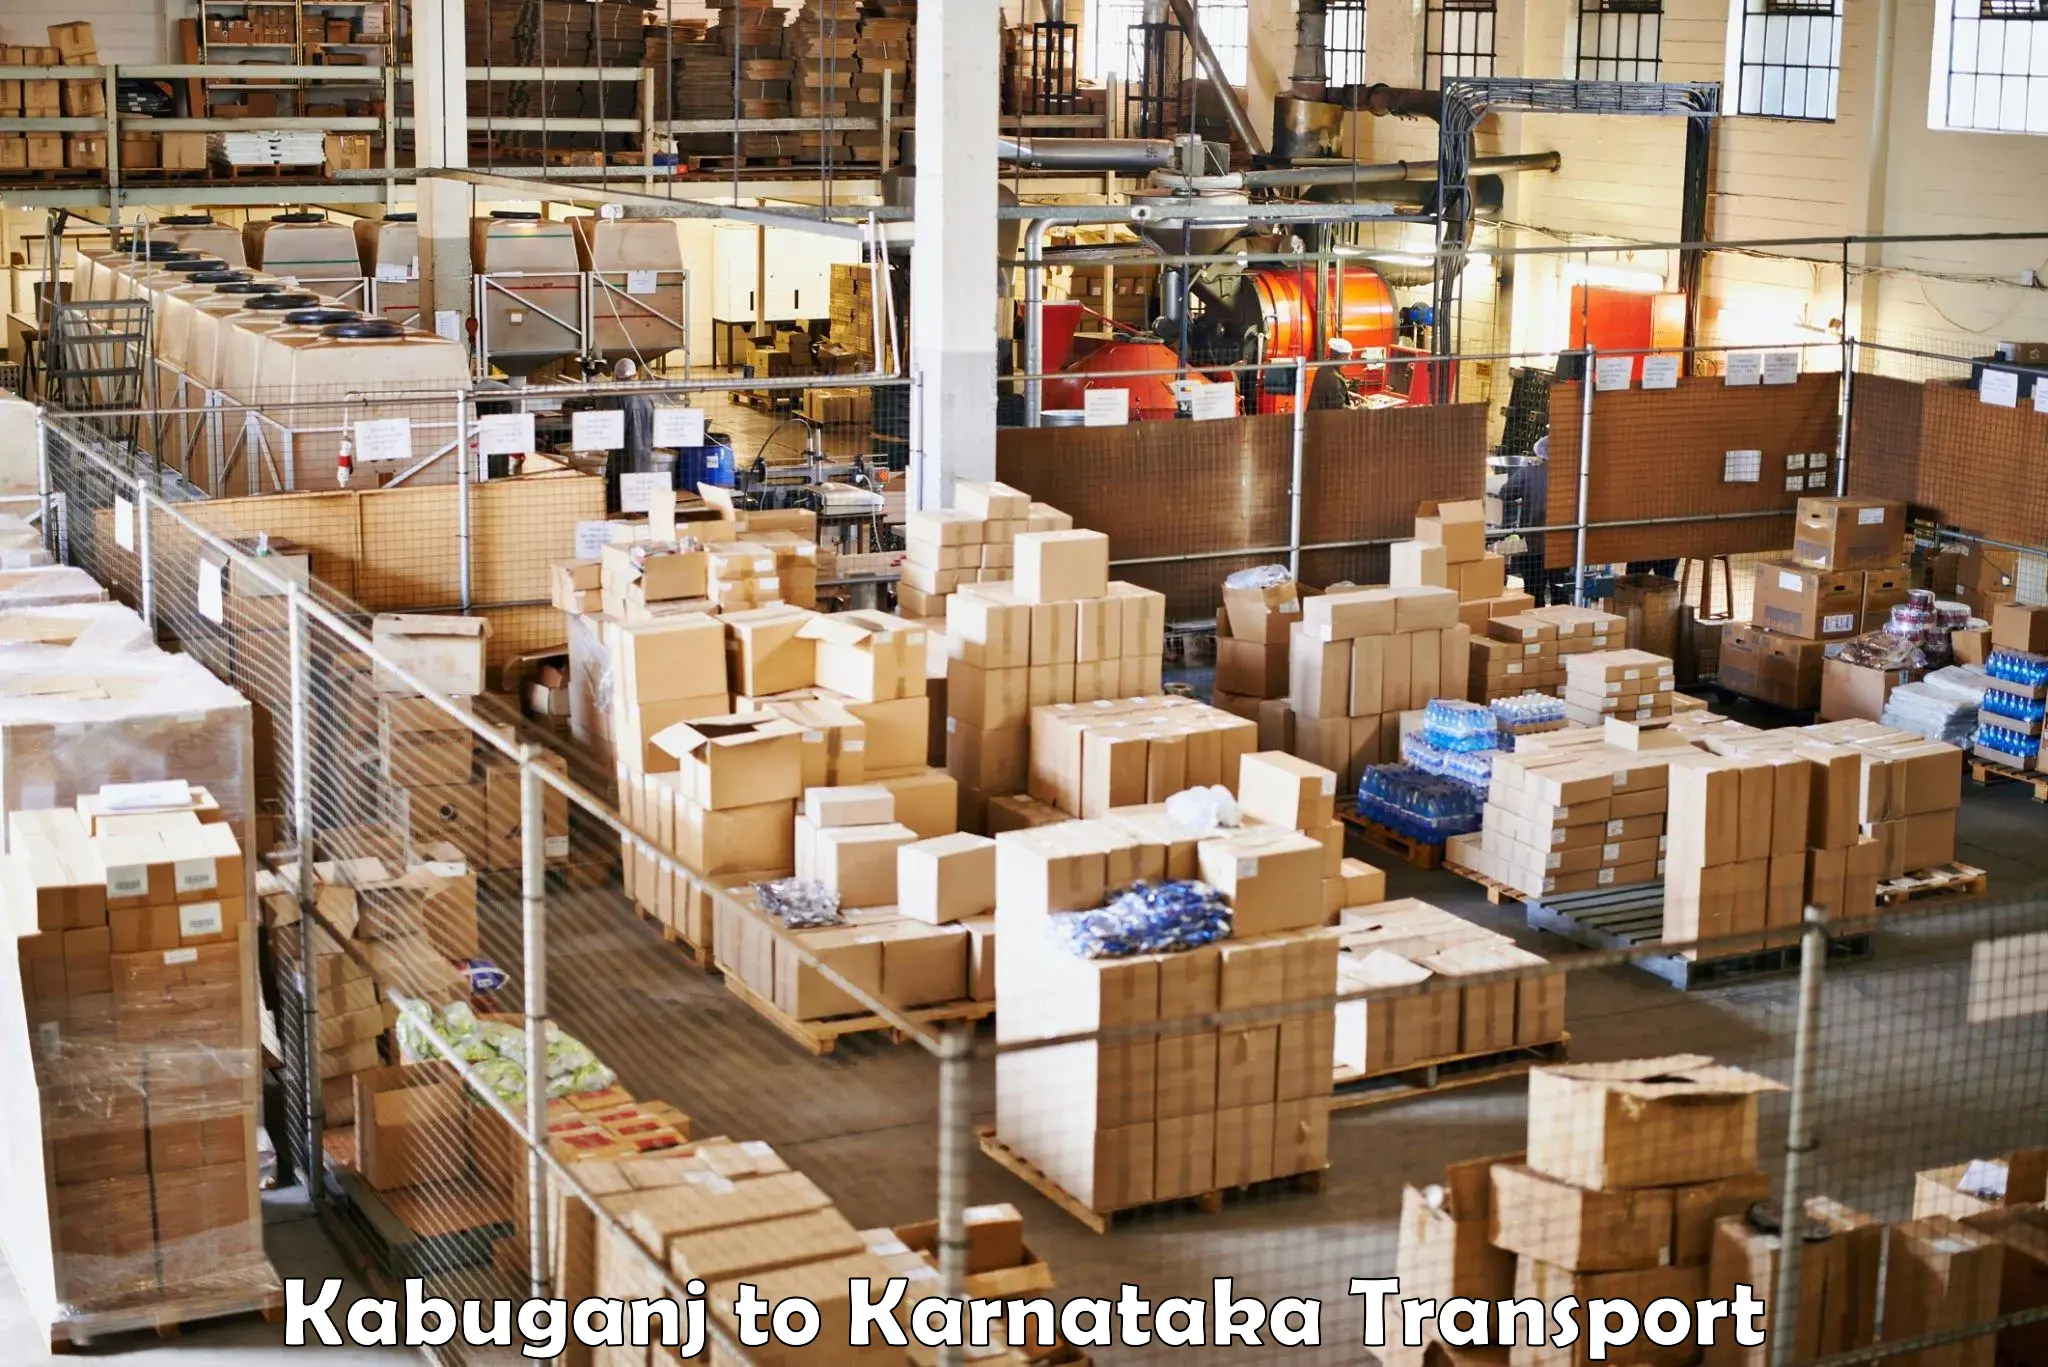 Daily parcel service transport in Kabuganj to Hubli